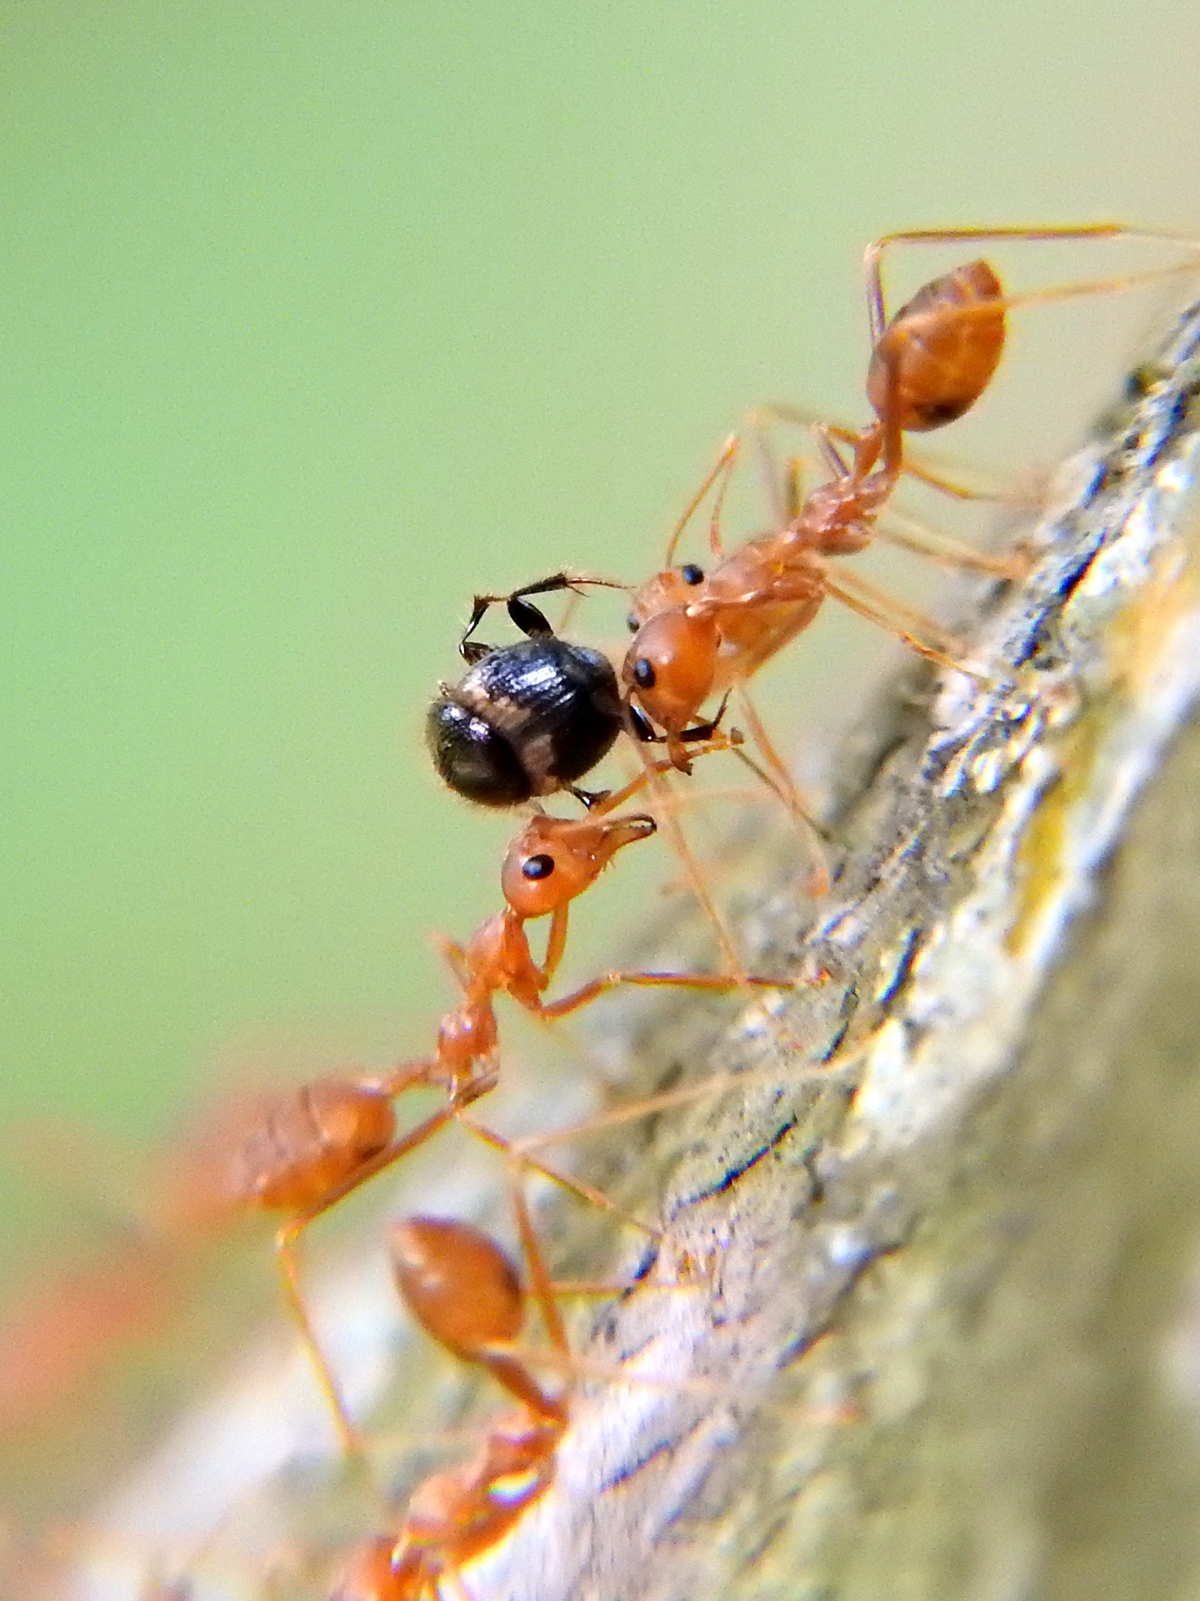 繁忙蚁冢中的活泼小蚂蚁